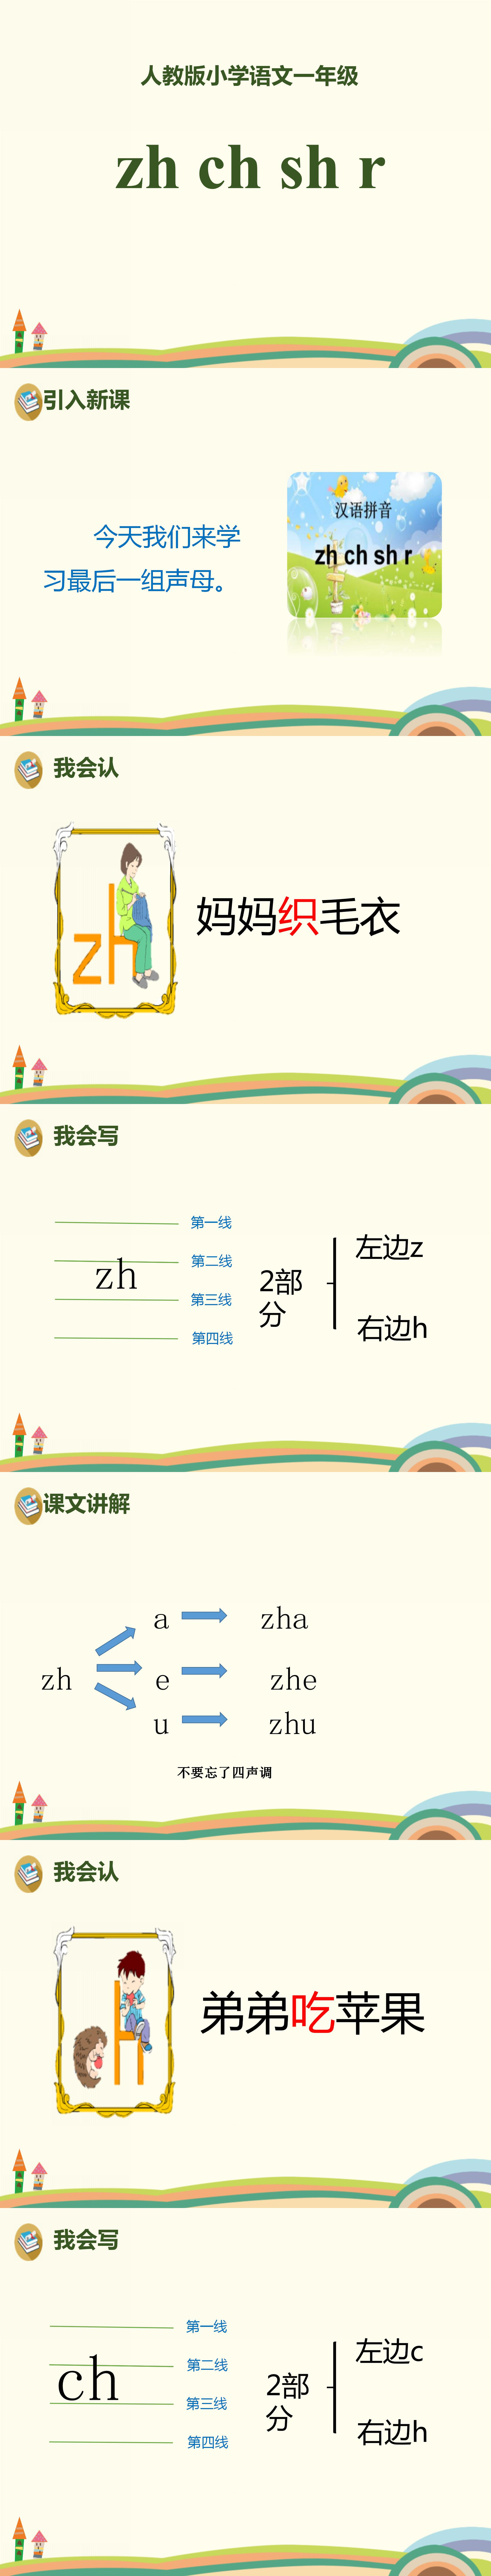 小学语文课件《zhchshr》汉语拼音PPT模板PPT课件下载